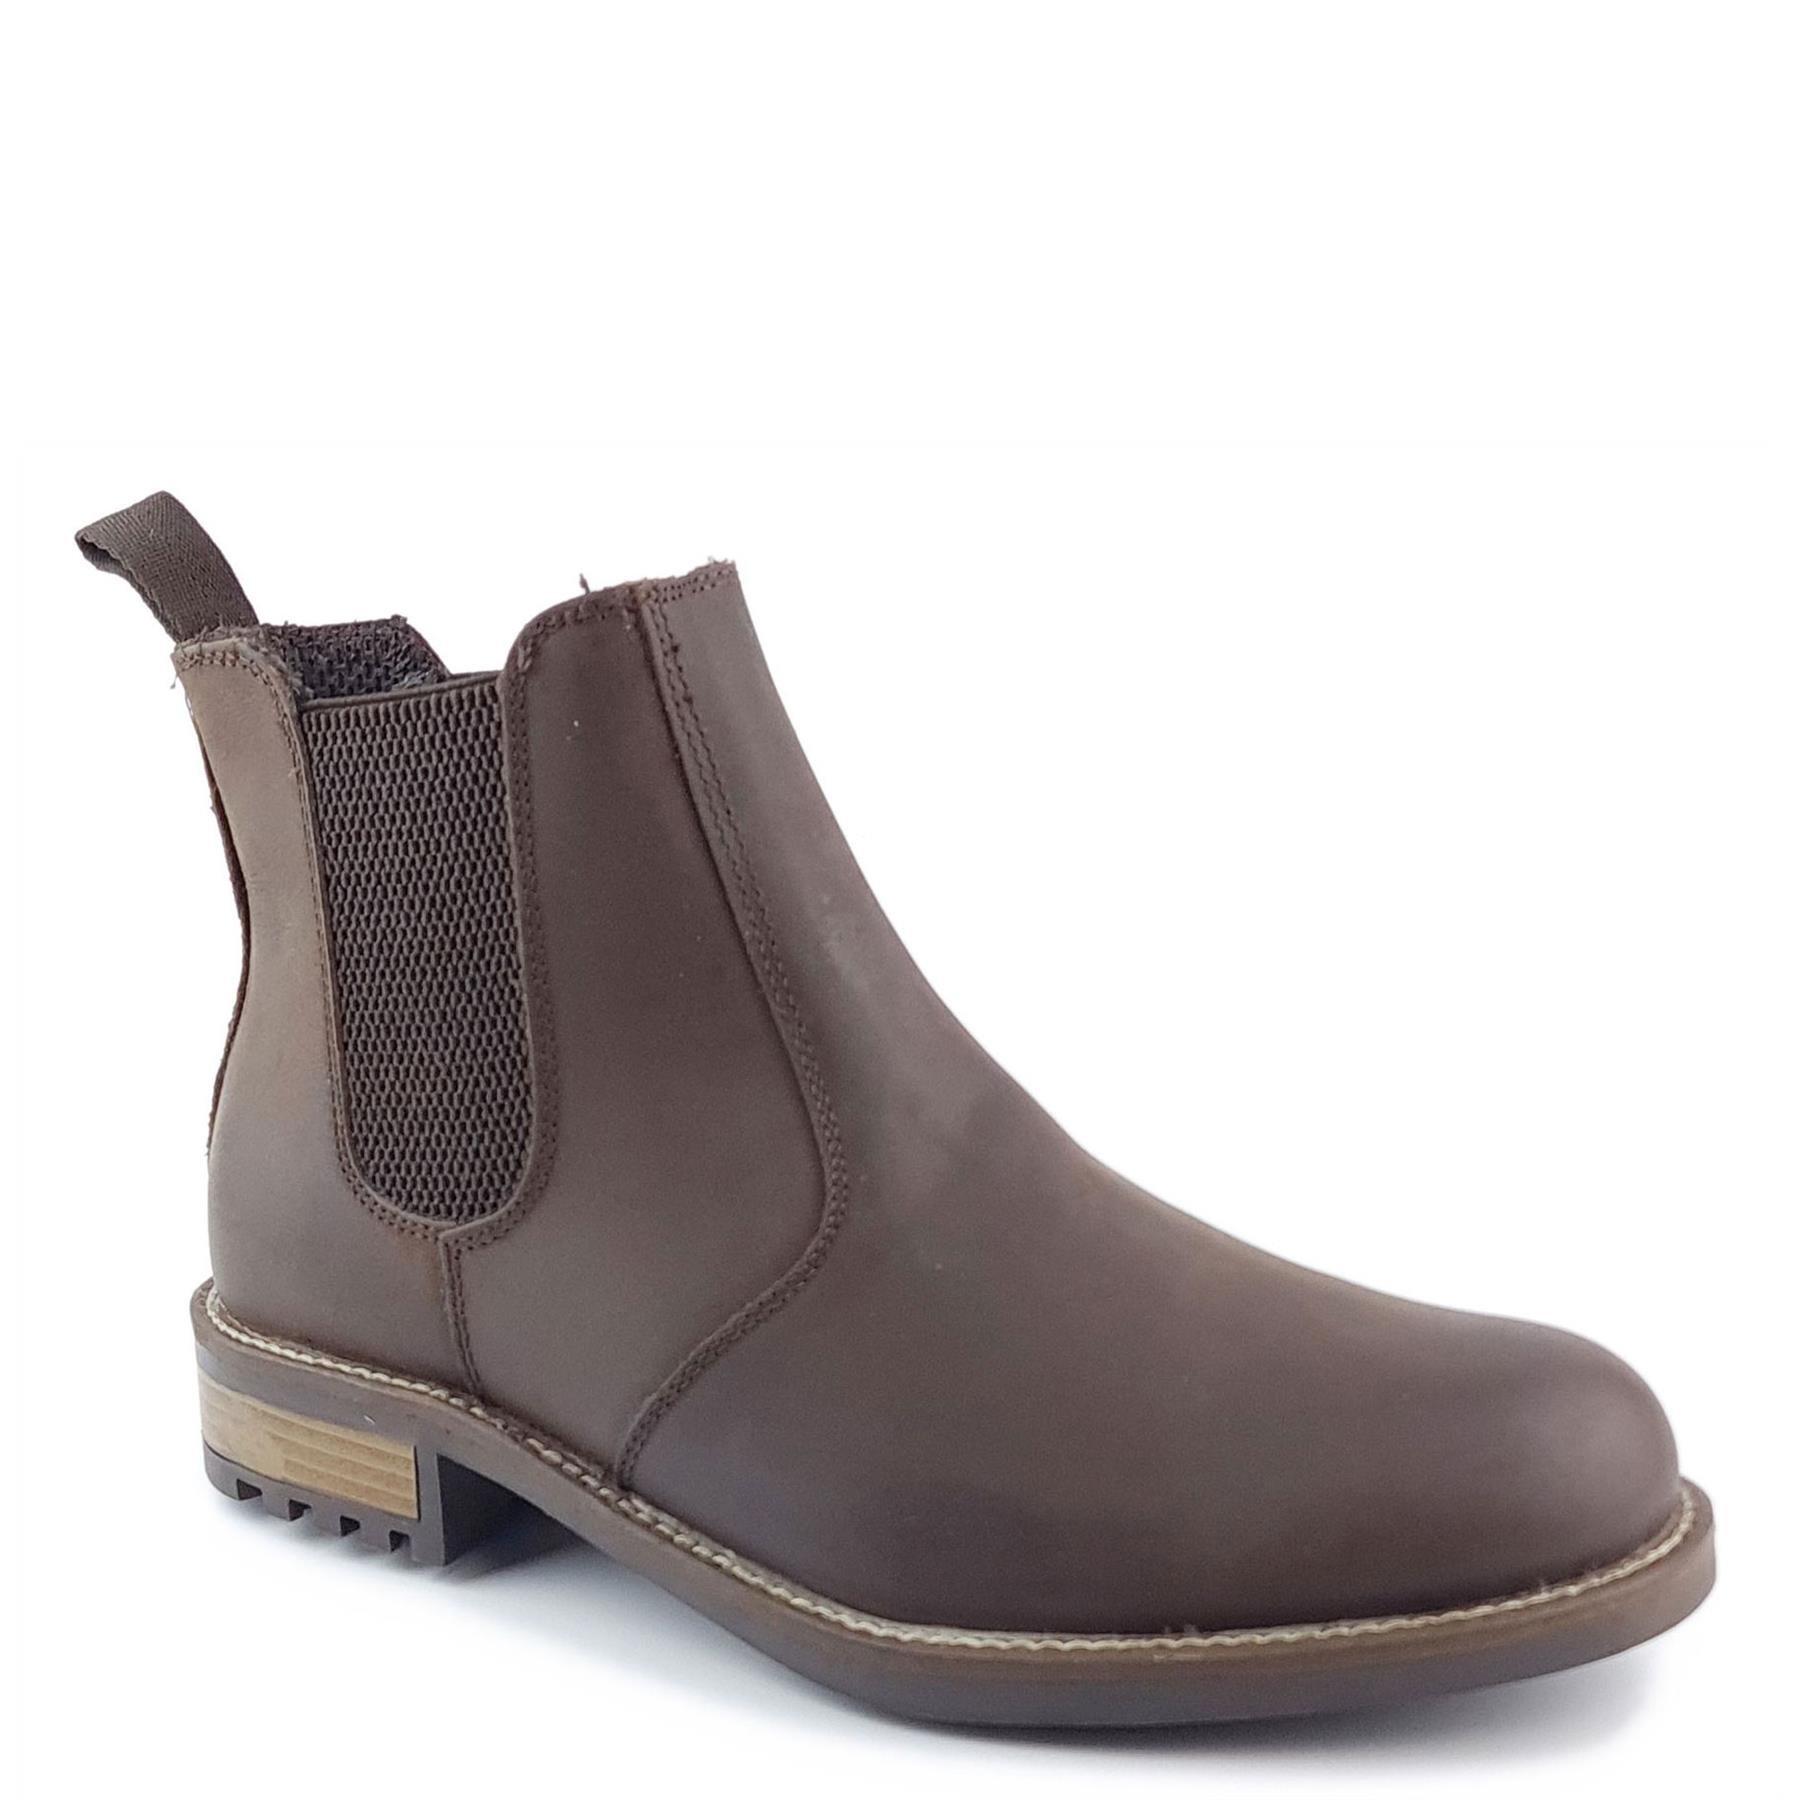 Кожаные ботинки челси Loddington Frank James, коричневый ботинки челси мужские из флока классические ботинки ручной работы без застежки черные